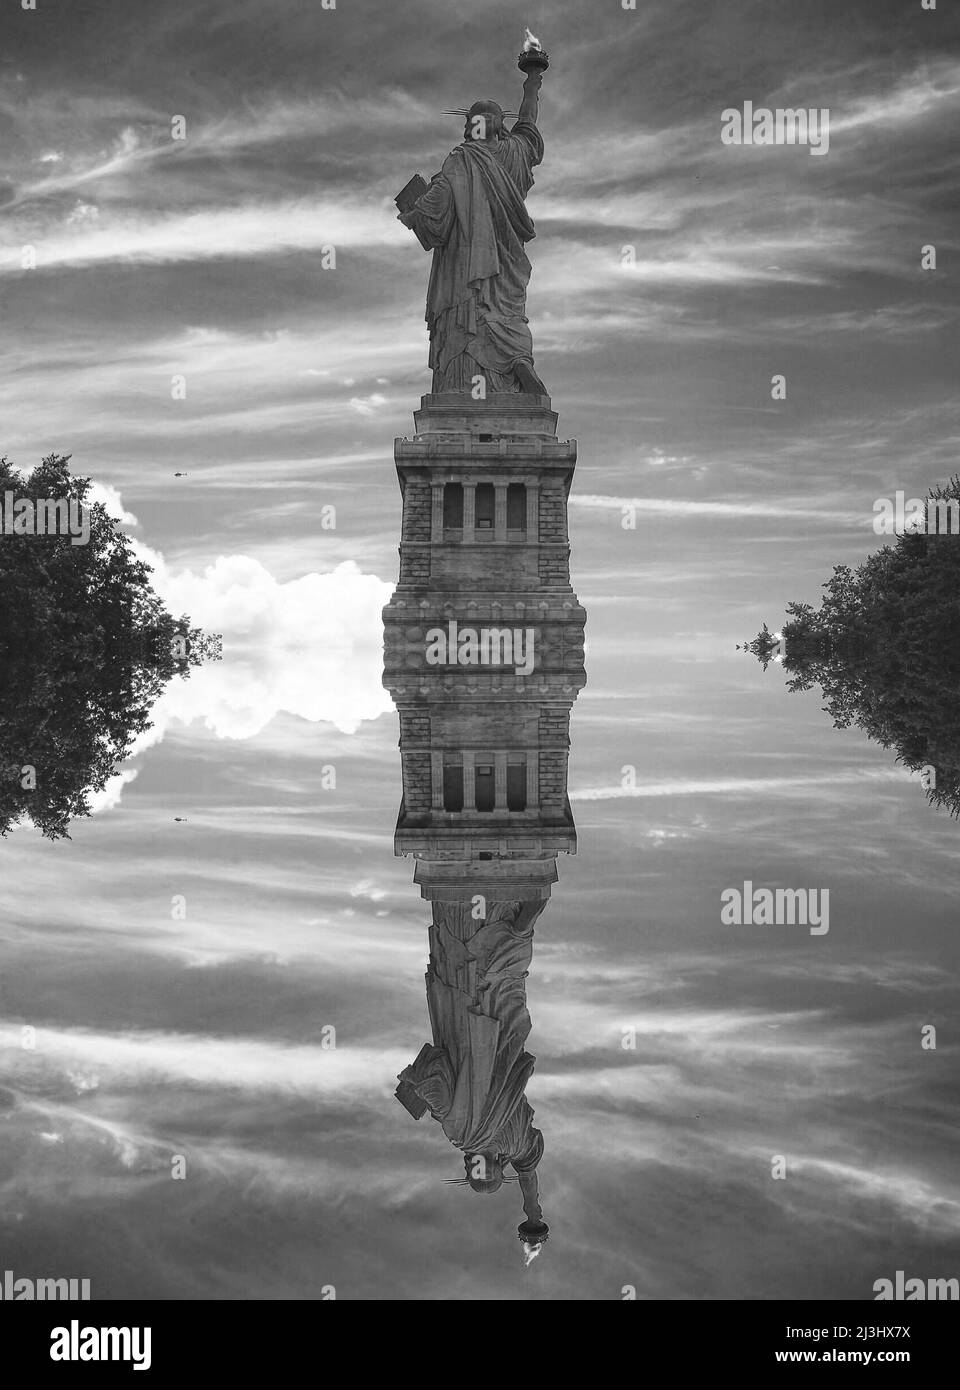 Liberty Island, New York, États-Unis, une vue inattendue de la célèbre Statue de la liberté de New York. Capturé dans un ciel spectaculaire. Banque D'Images